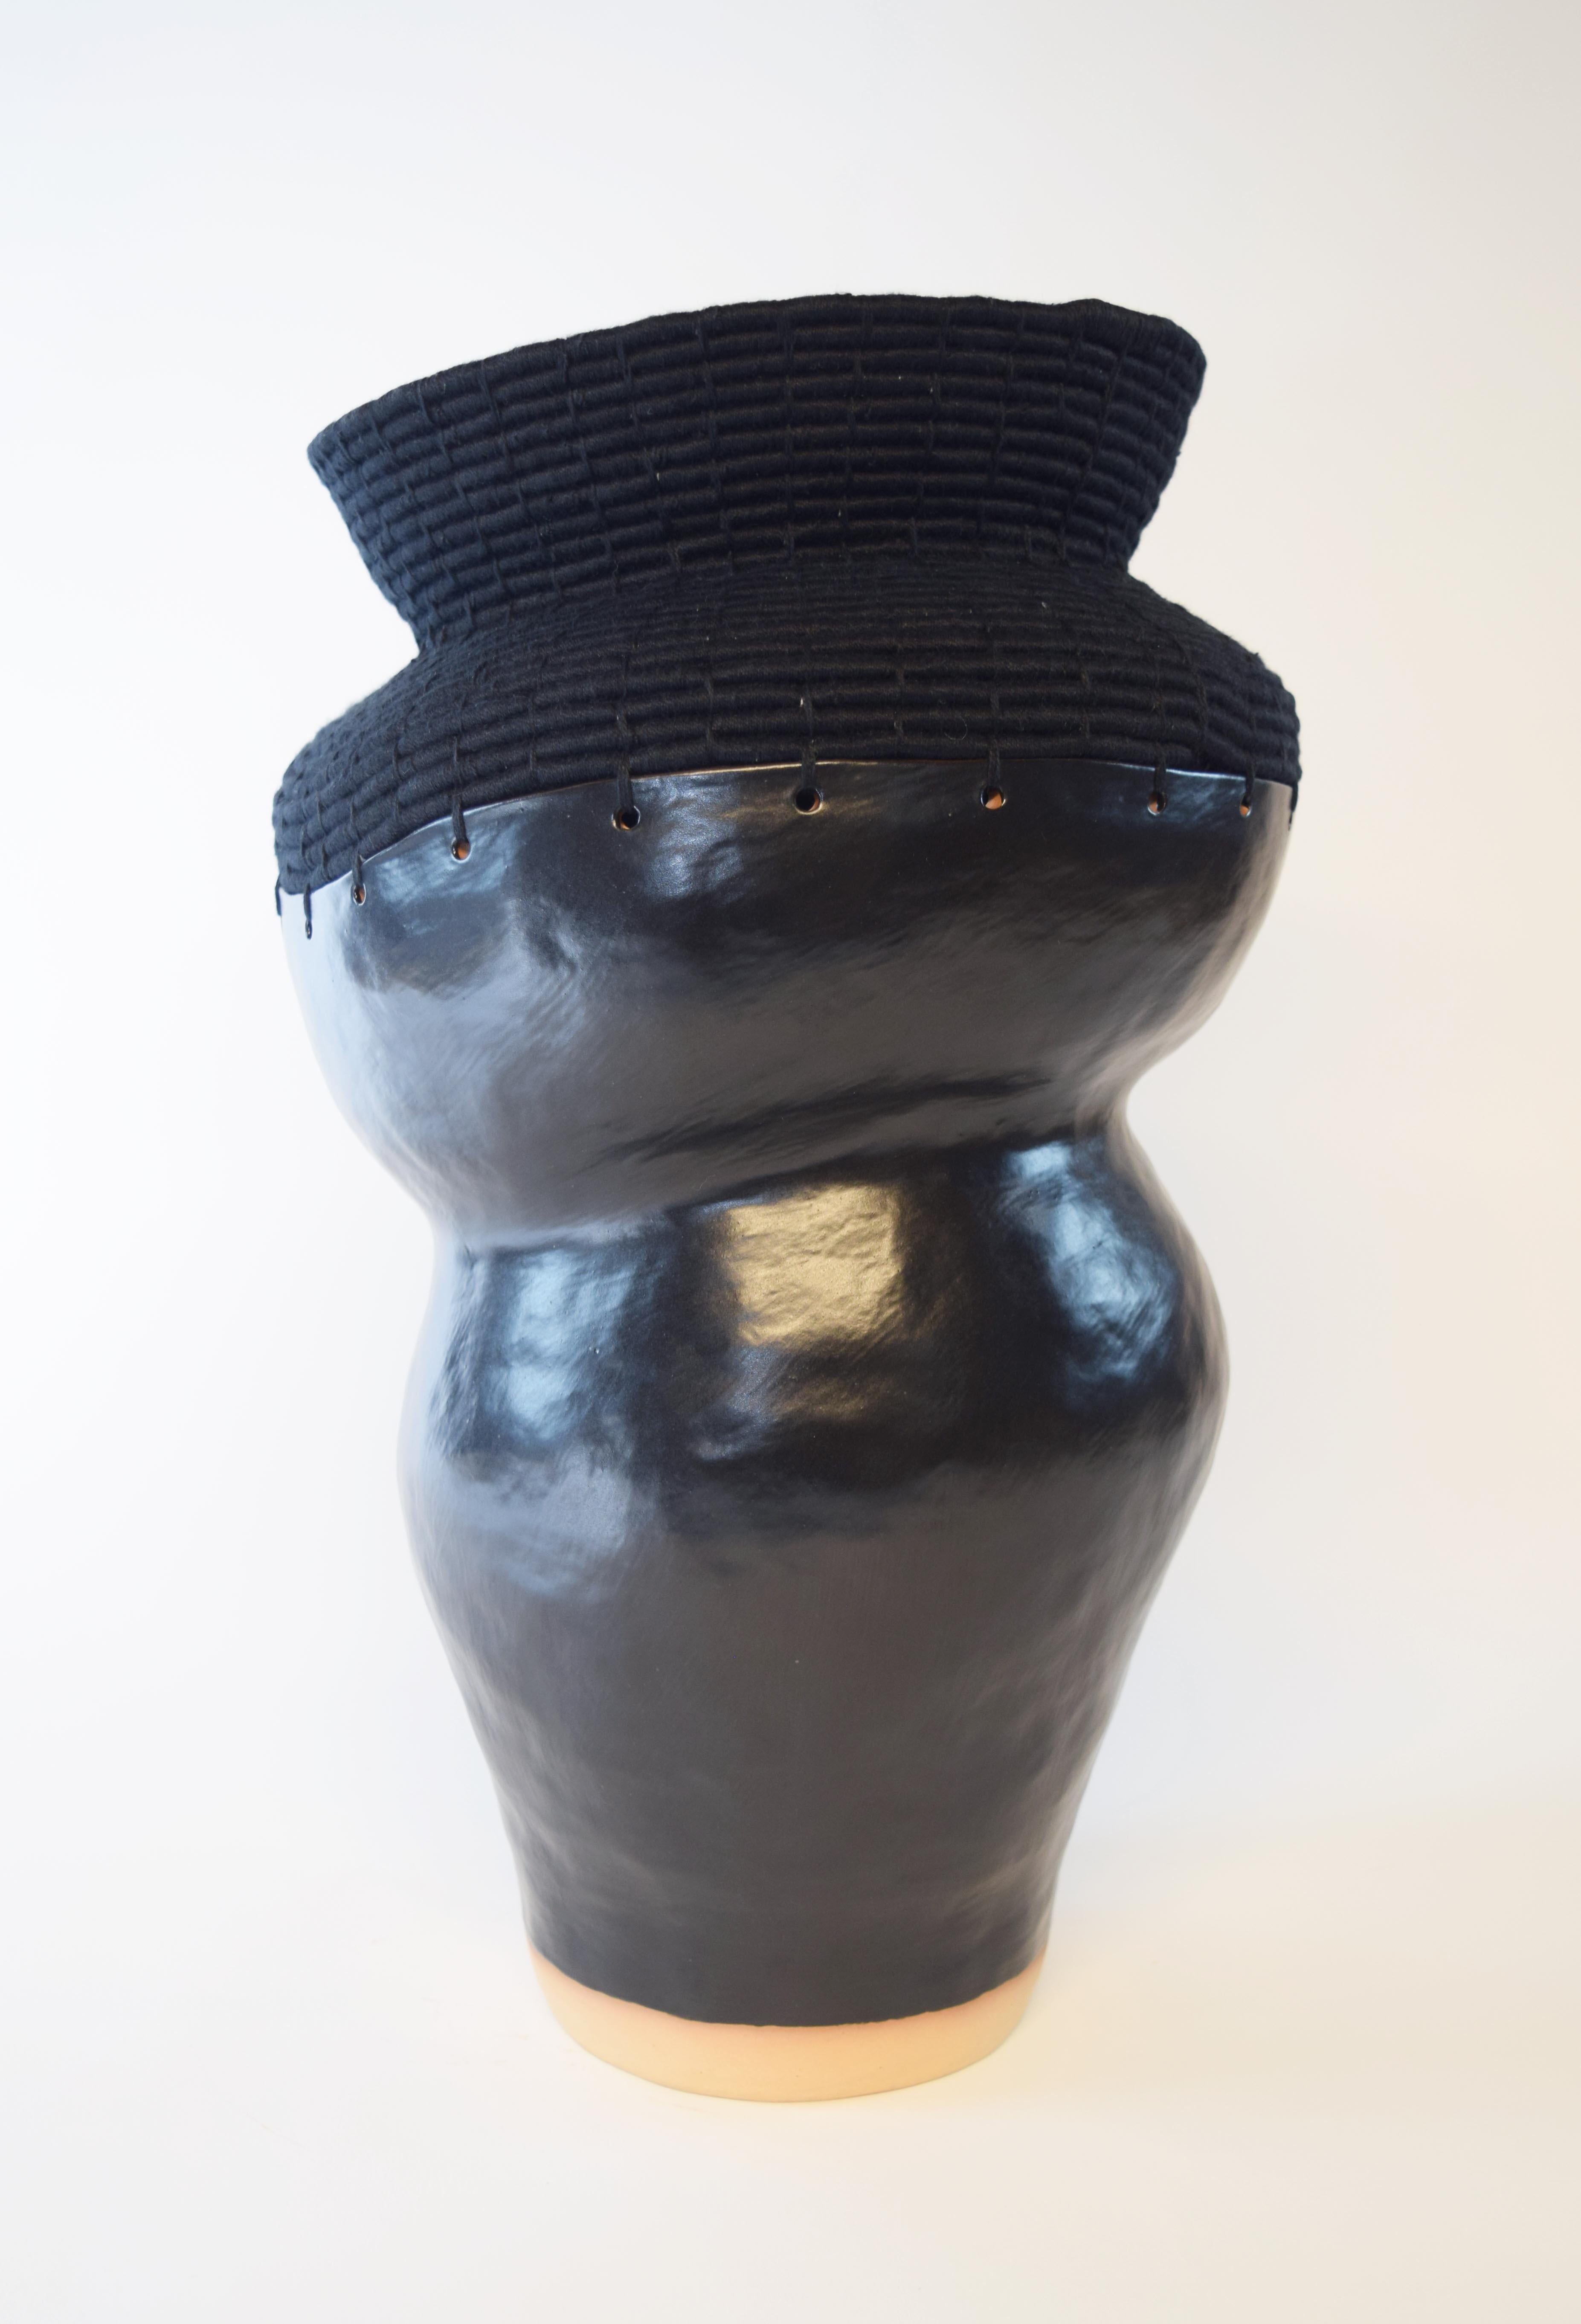 Einzigartiges Gefäß #762 von Karen Gayle Tinney

Handgeformter Sockel aus Steinzeug mit mattschwarzer Glasur. Der obere Teil ist aus schwarzer Baumwolle gewebt.

18 